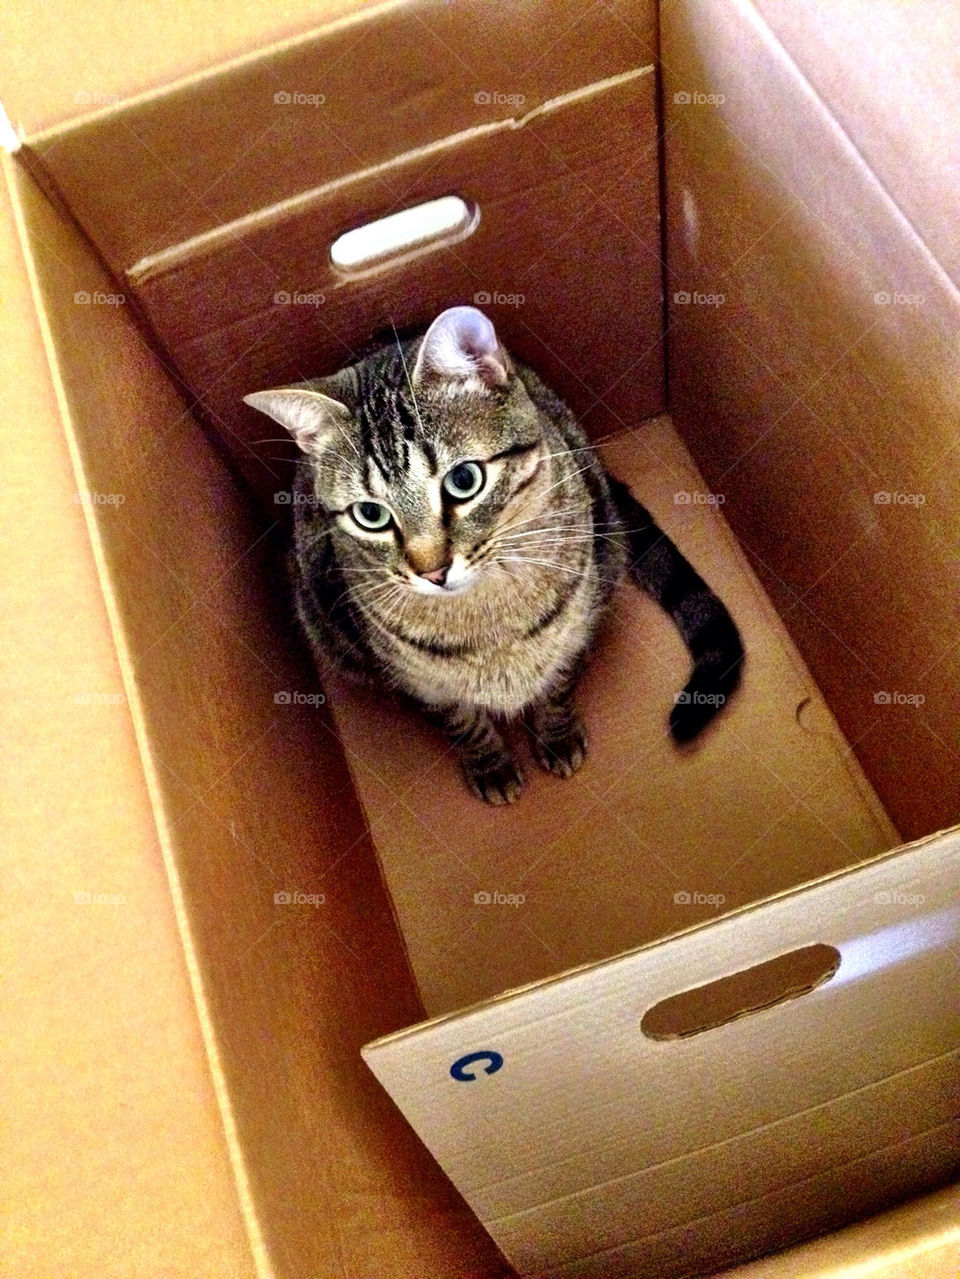 Cat in s box.